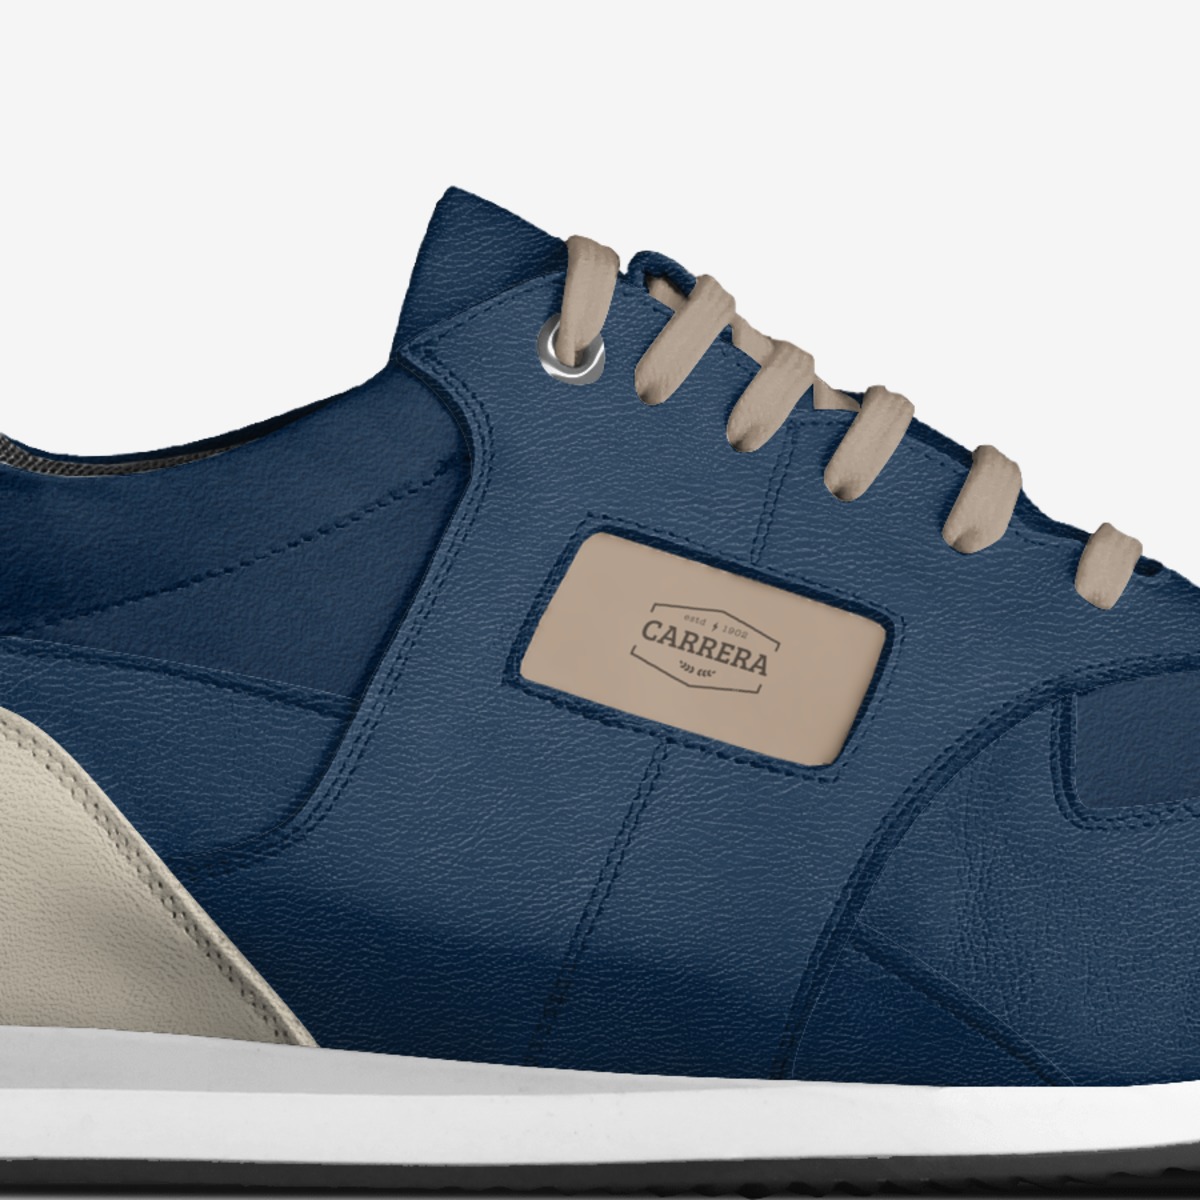 CARRERA | A Custom Shoe concept by Gerardo Carrera